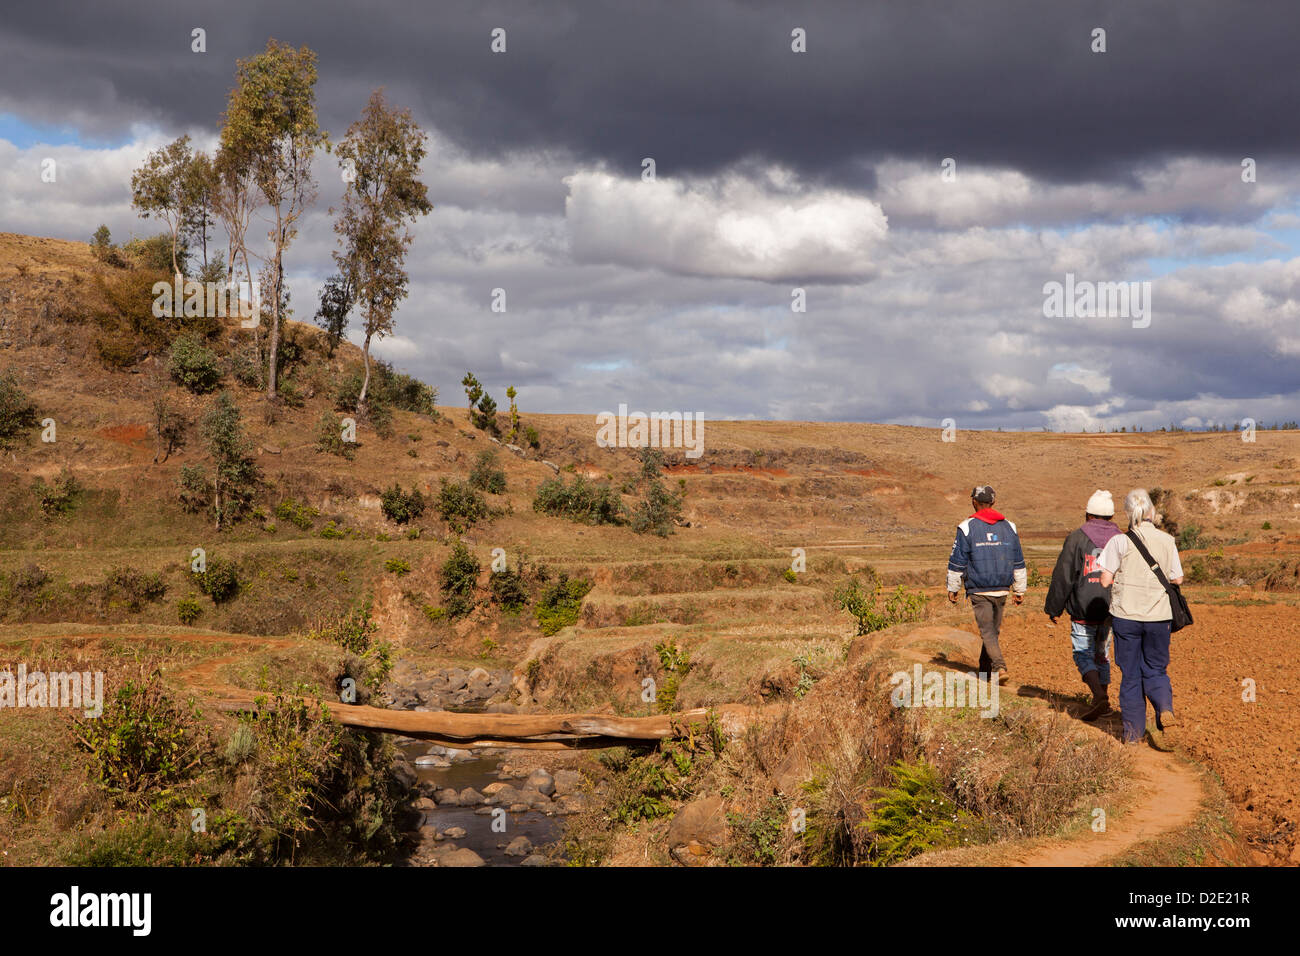 Antsirabe, Madagascar, dirigée par des guides touristiques traversant les terres agricoles pour se rendre dans un village éloigné Banque D'Images